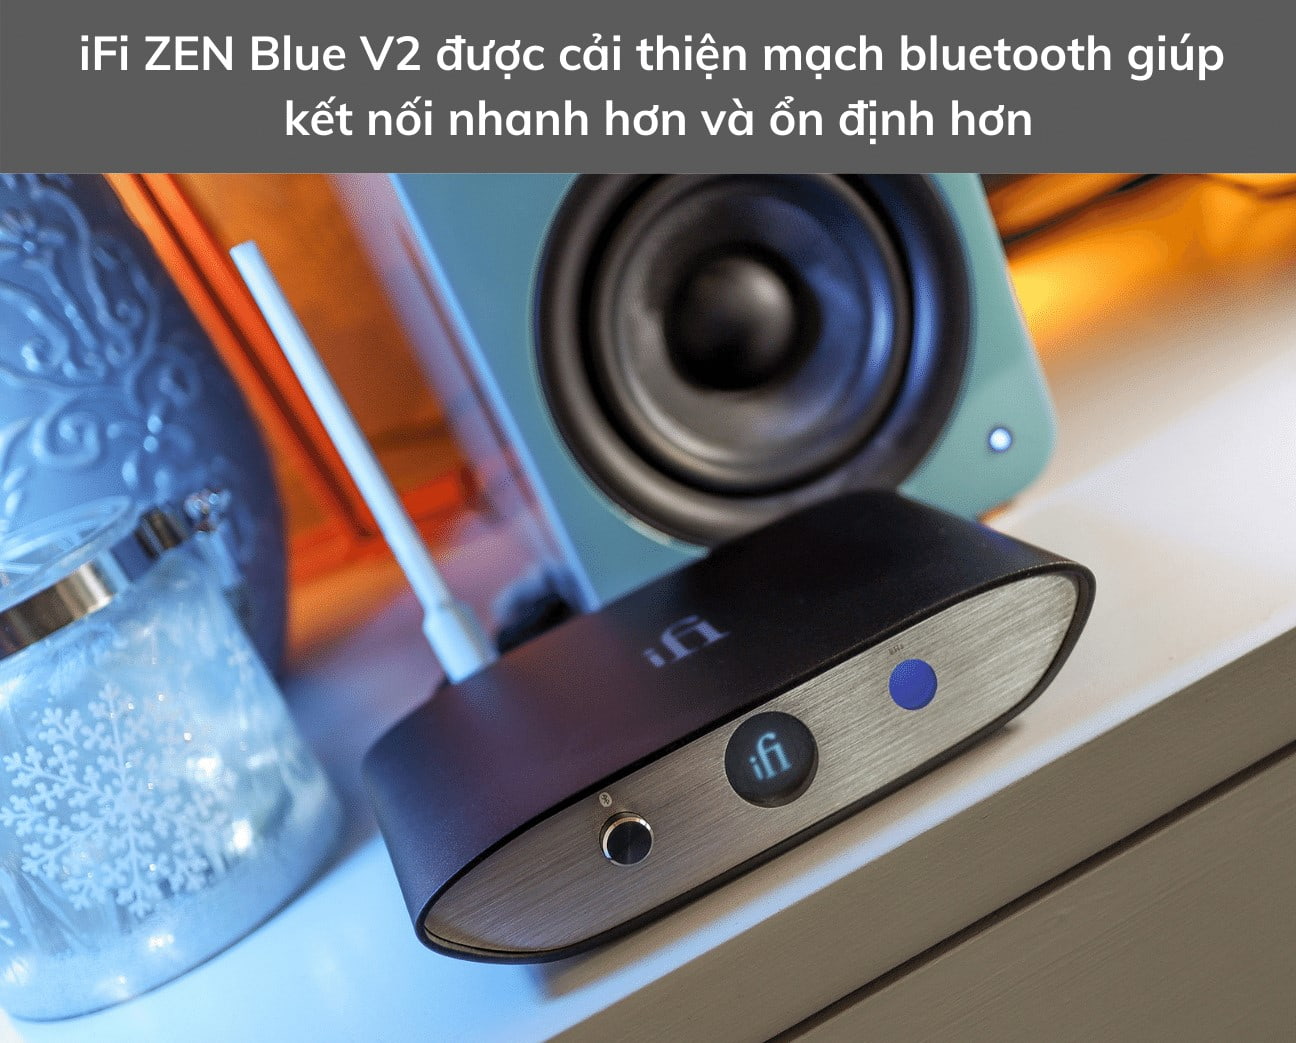 iFi Zen Blue V2